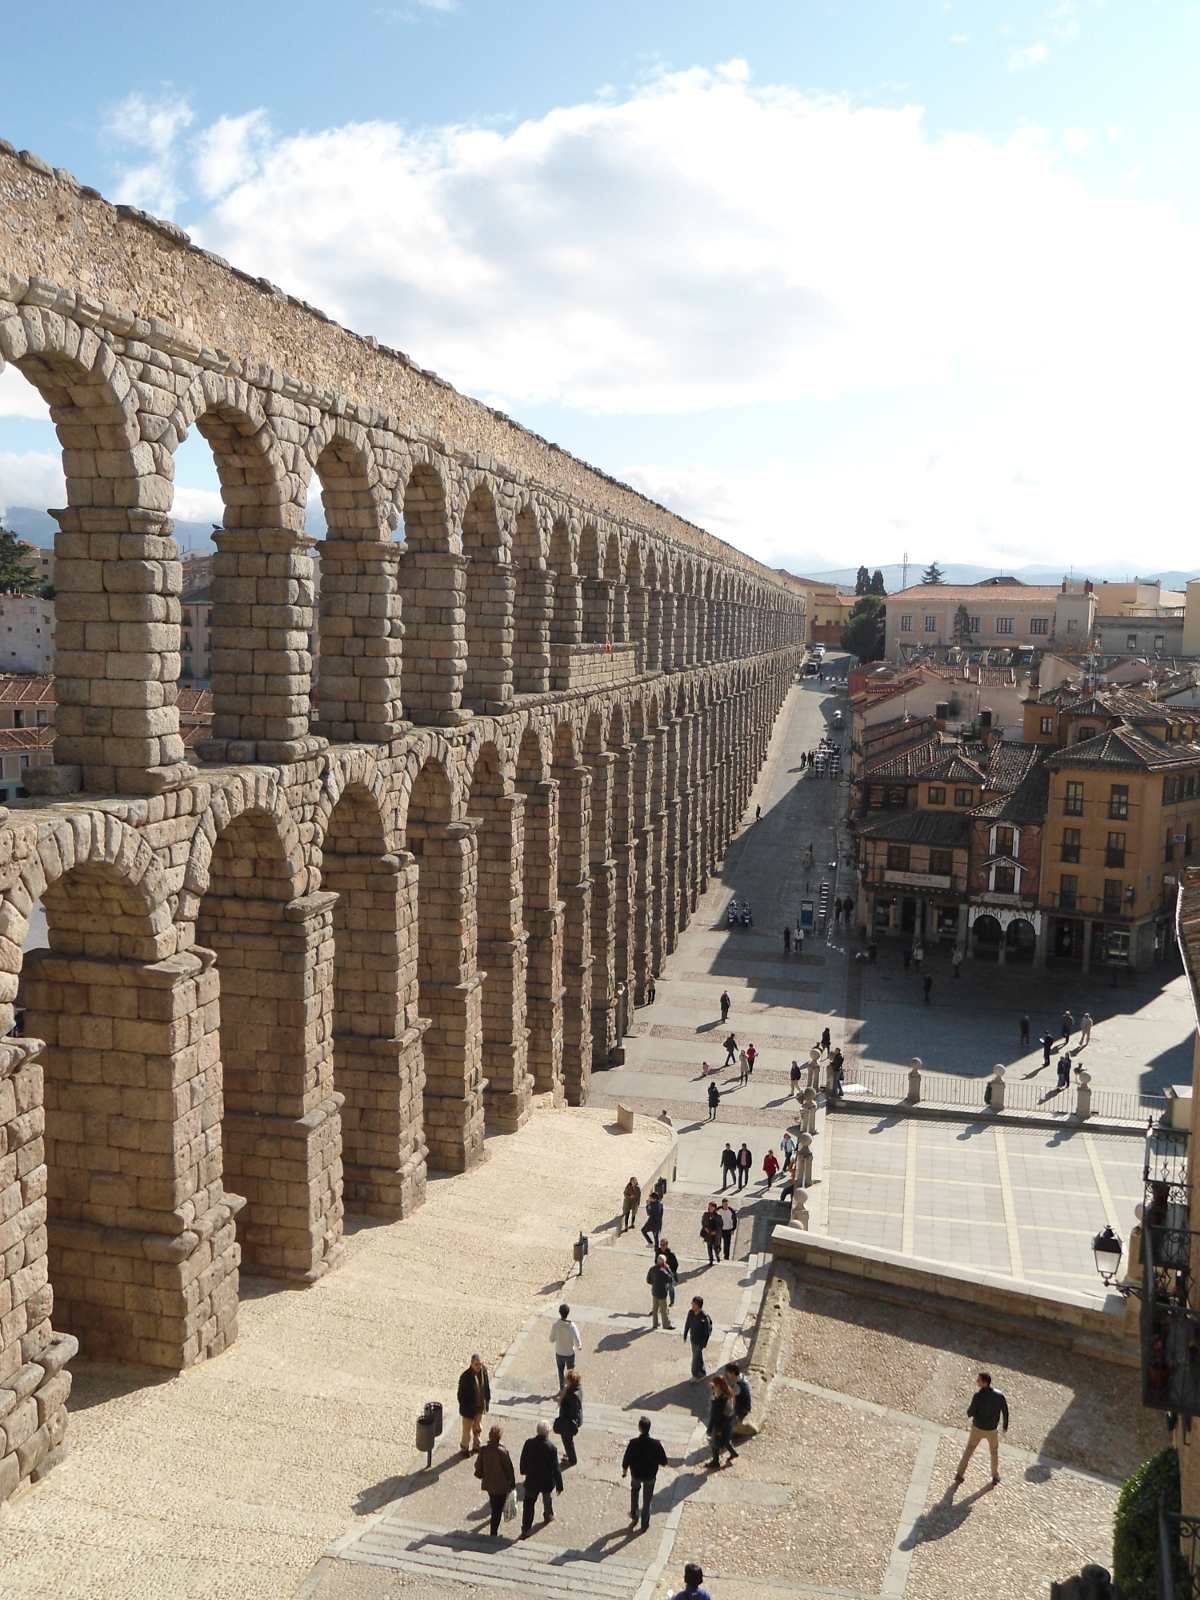 The Aqueduct in Segovia.